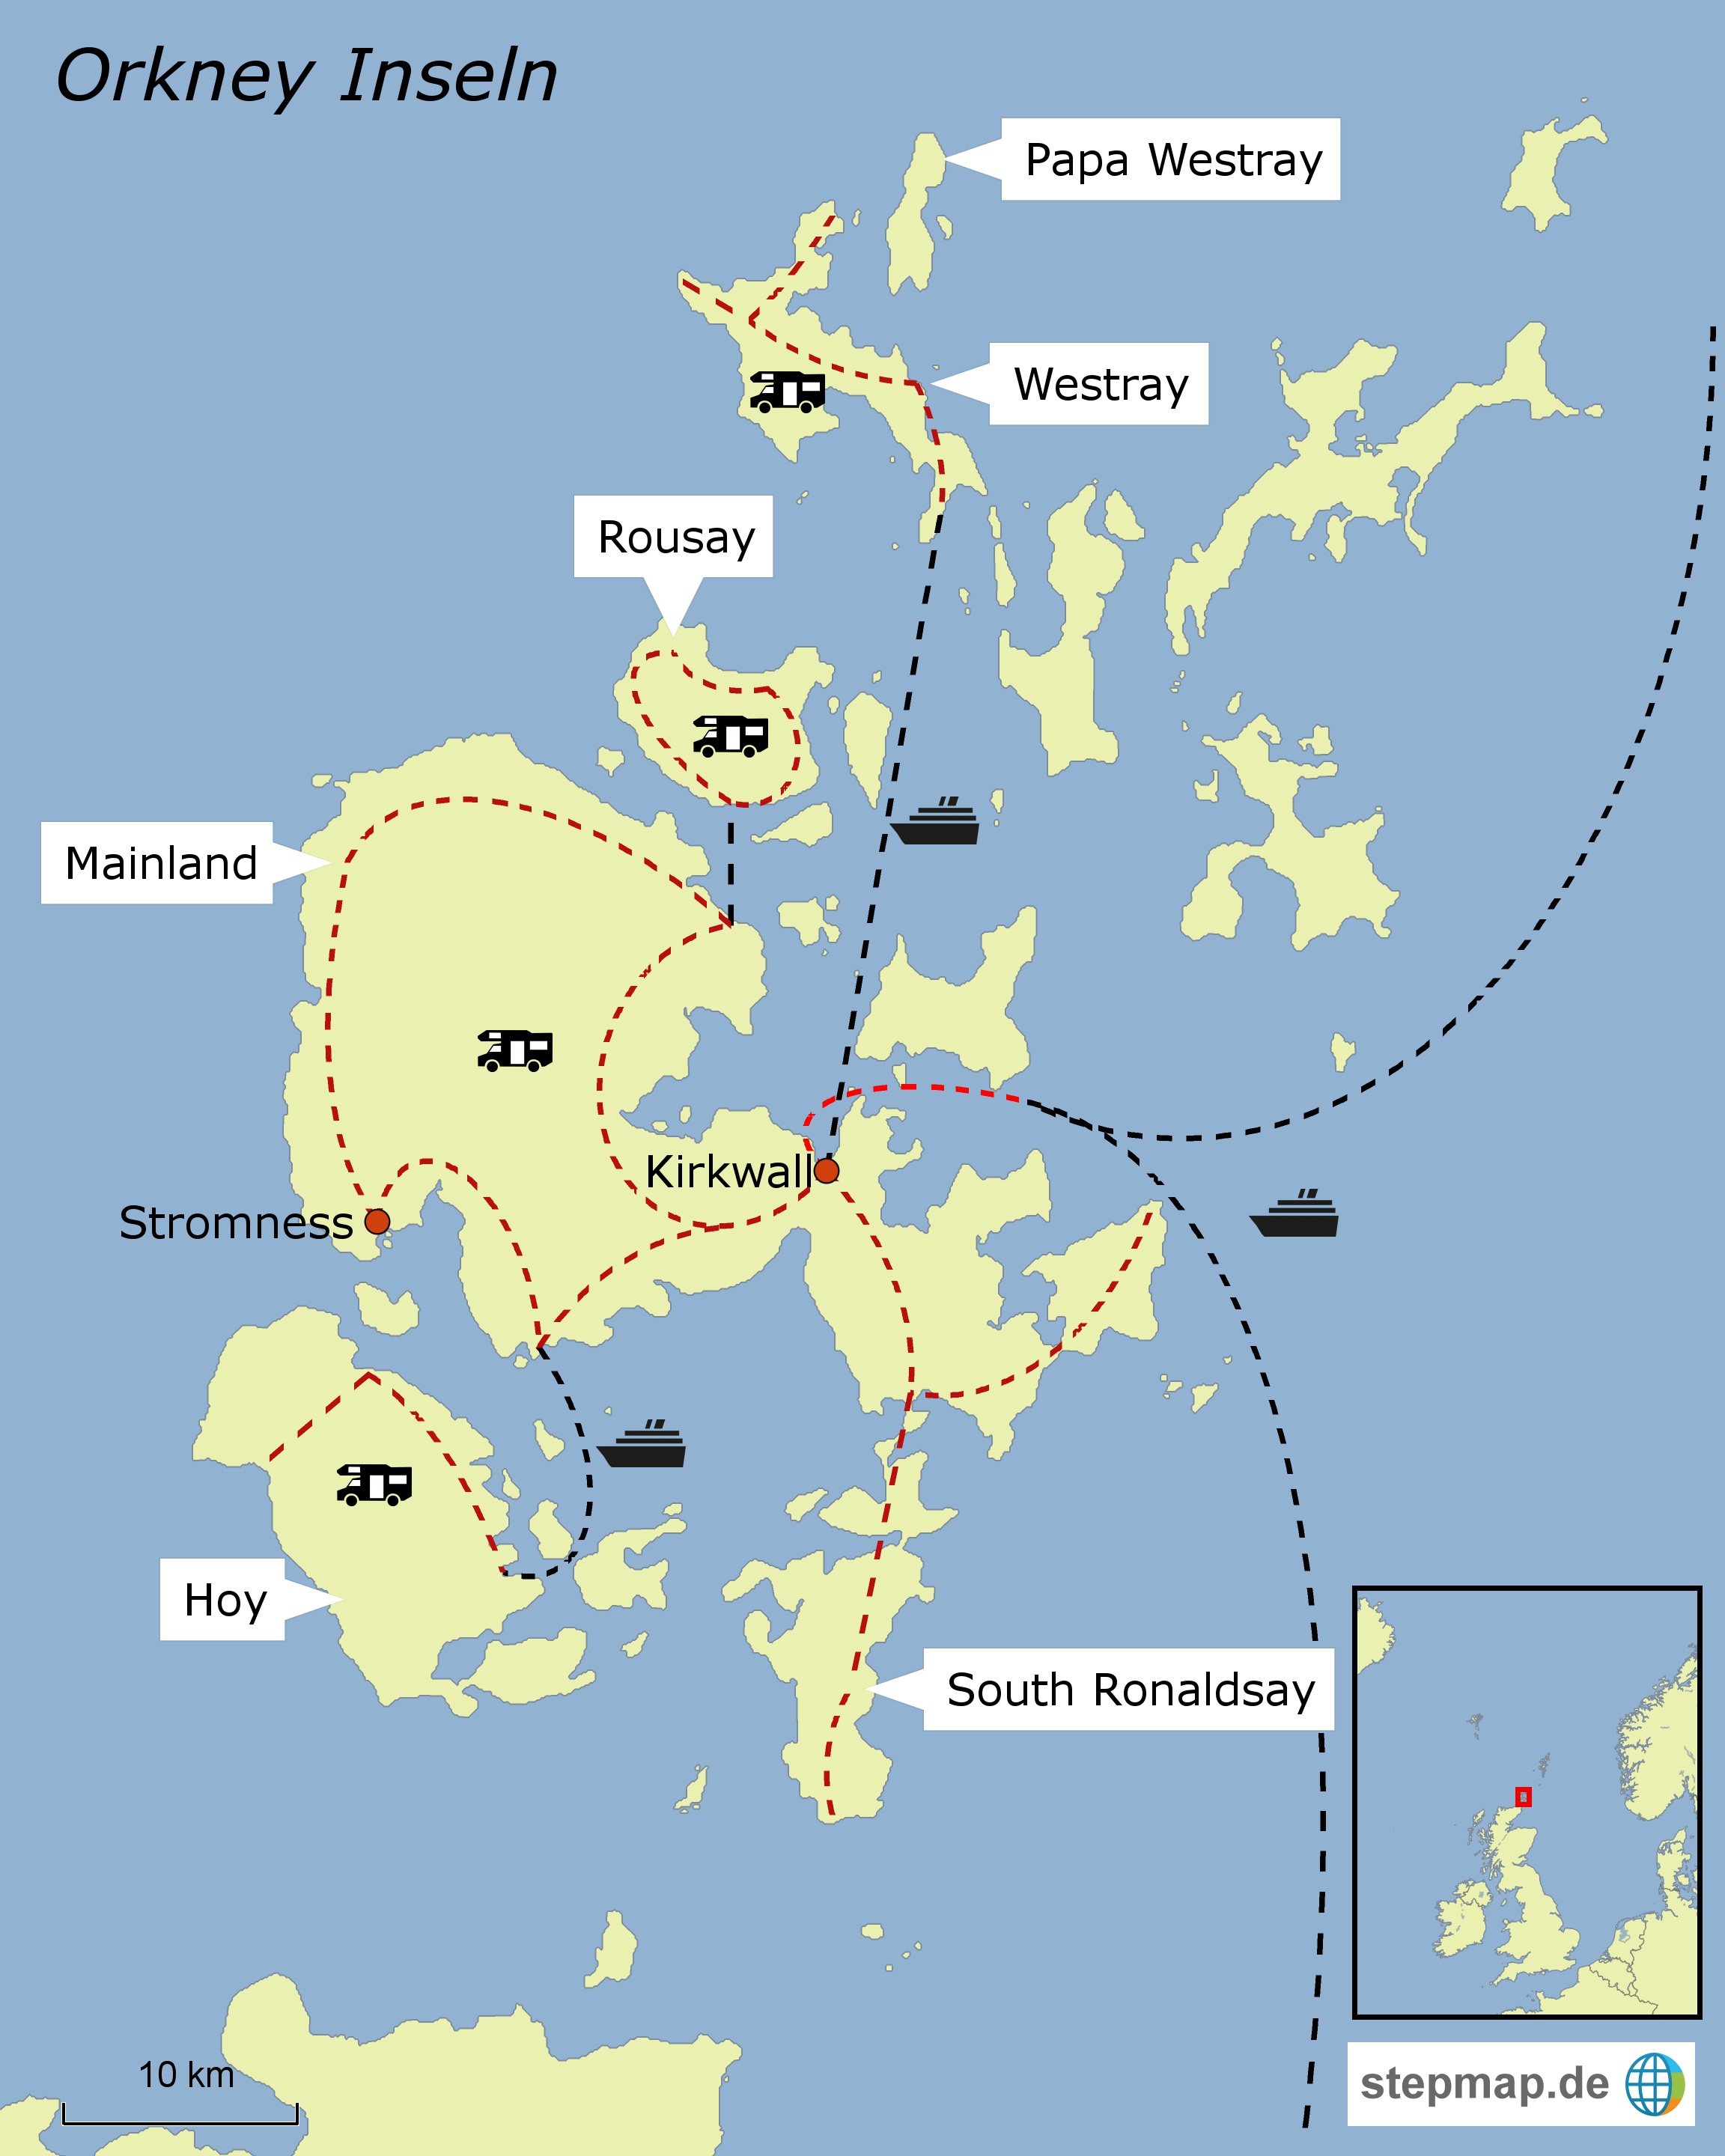 stepmap-karte-orkney-1379287(1)02